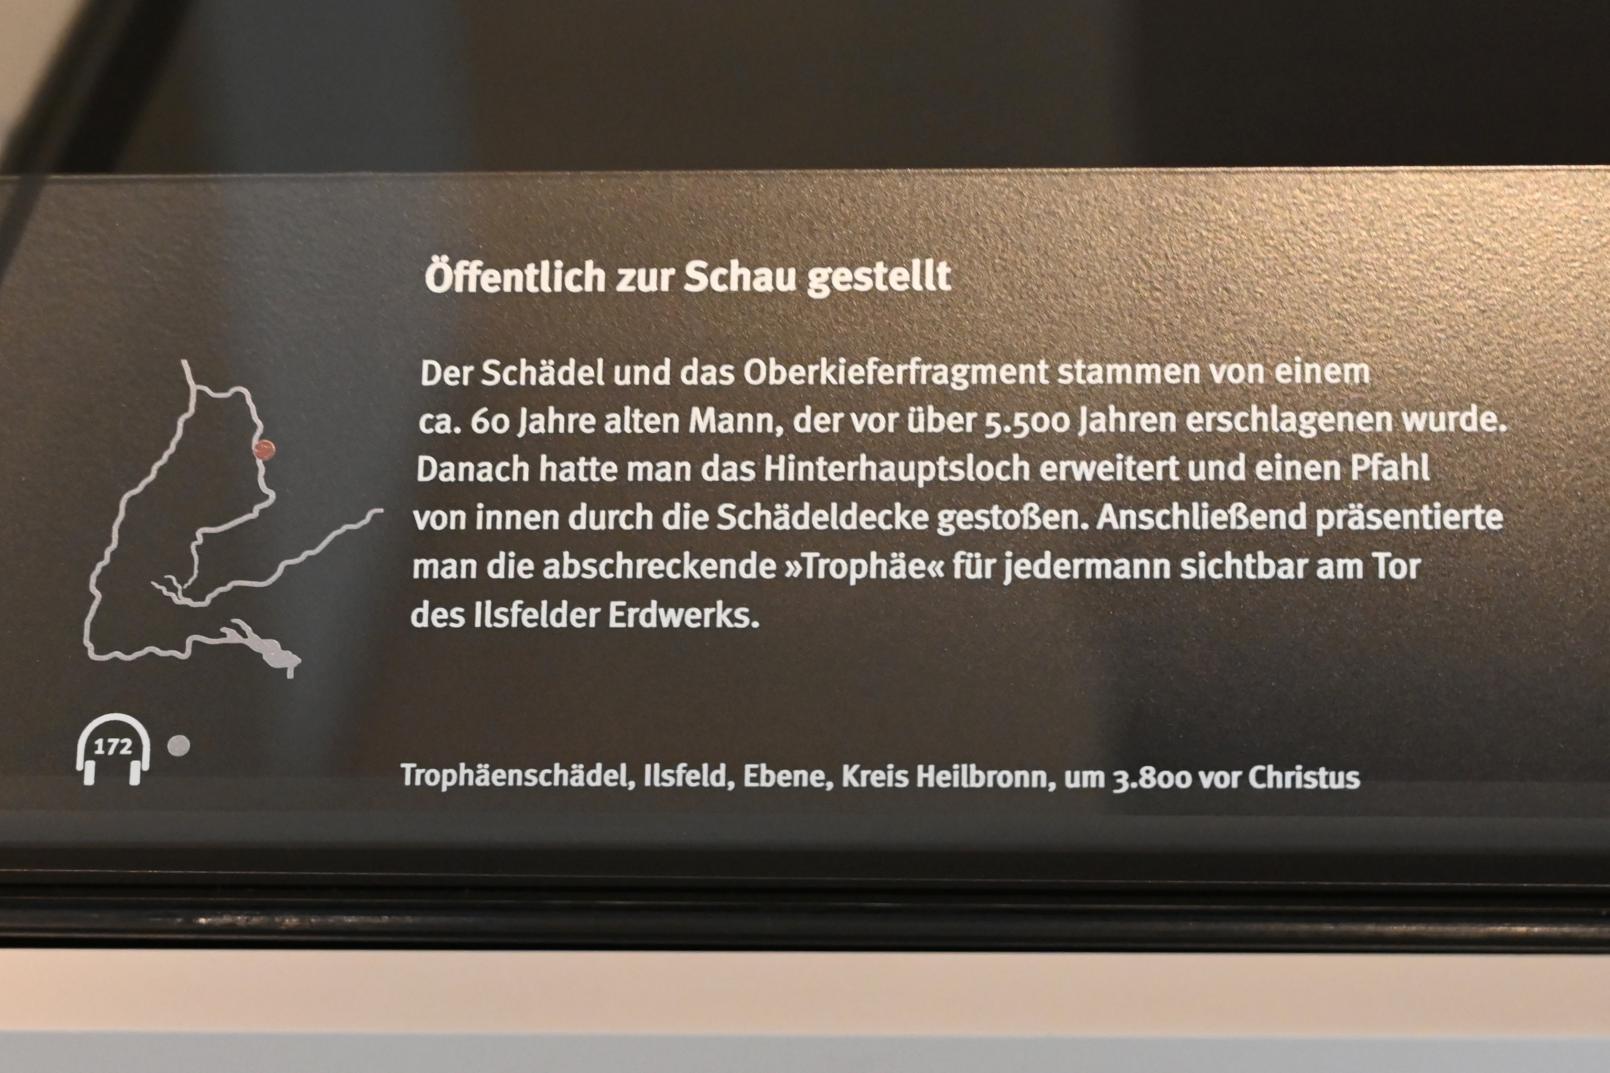 Trophäenschädel, Neolithikum (Jungsteinzeit), 5500 - 1700 v. Chr., 3800 v. Chr., Bild 2/2